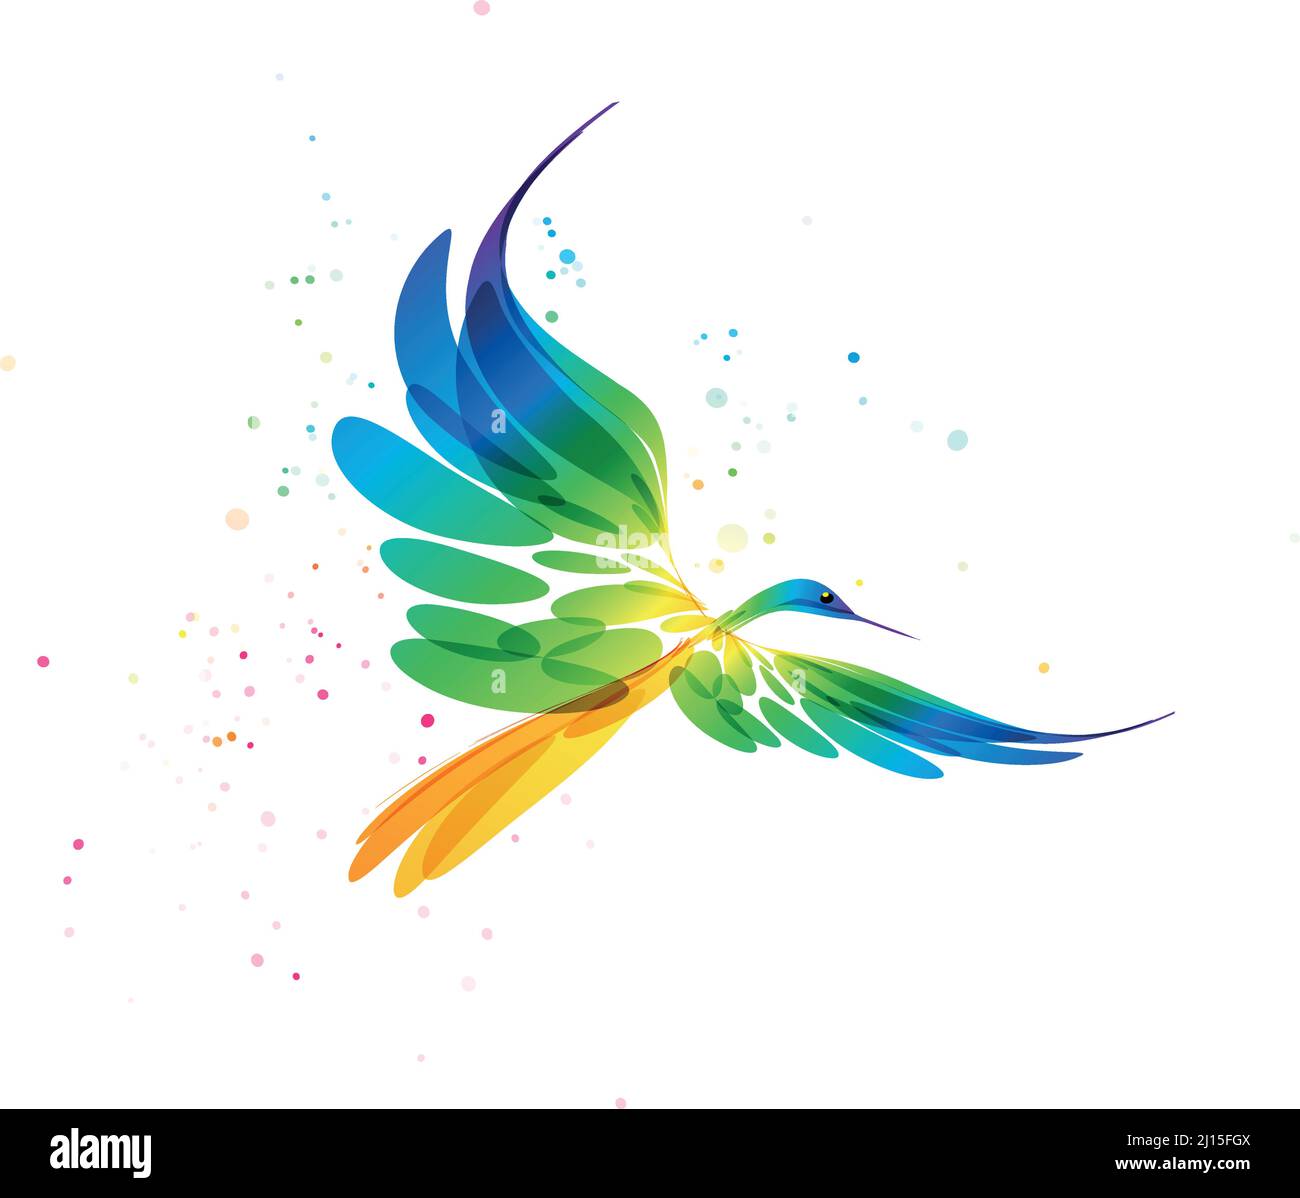 Vogel stilisierte Kunst, bunte Vogel auf weißem Hintergrund, Fantasy-Vogel im Flug, abstrakte Grafik Vogel, Farbe Vektor-Bild Stock Vektor